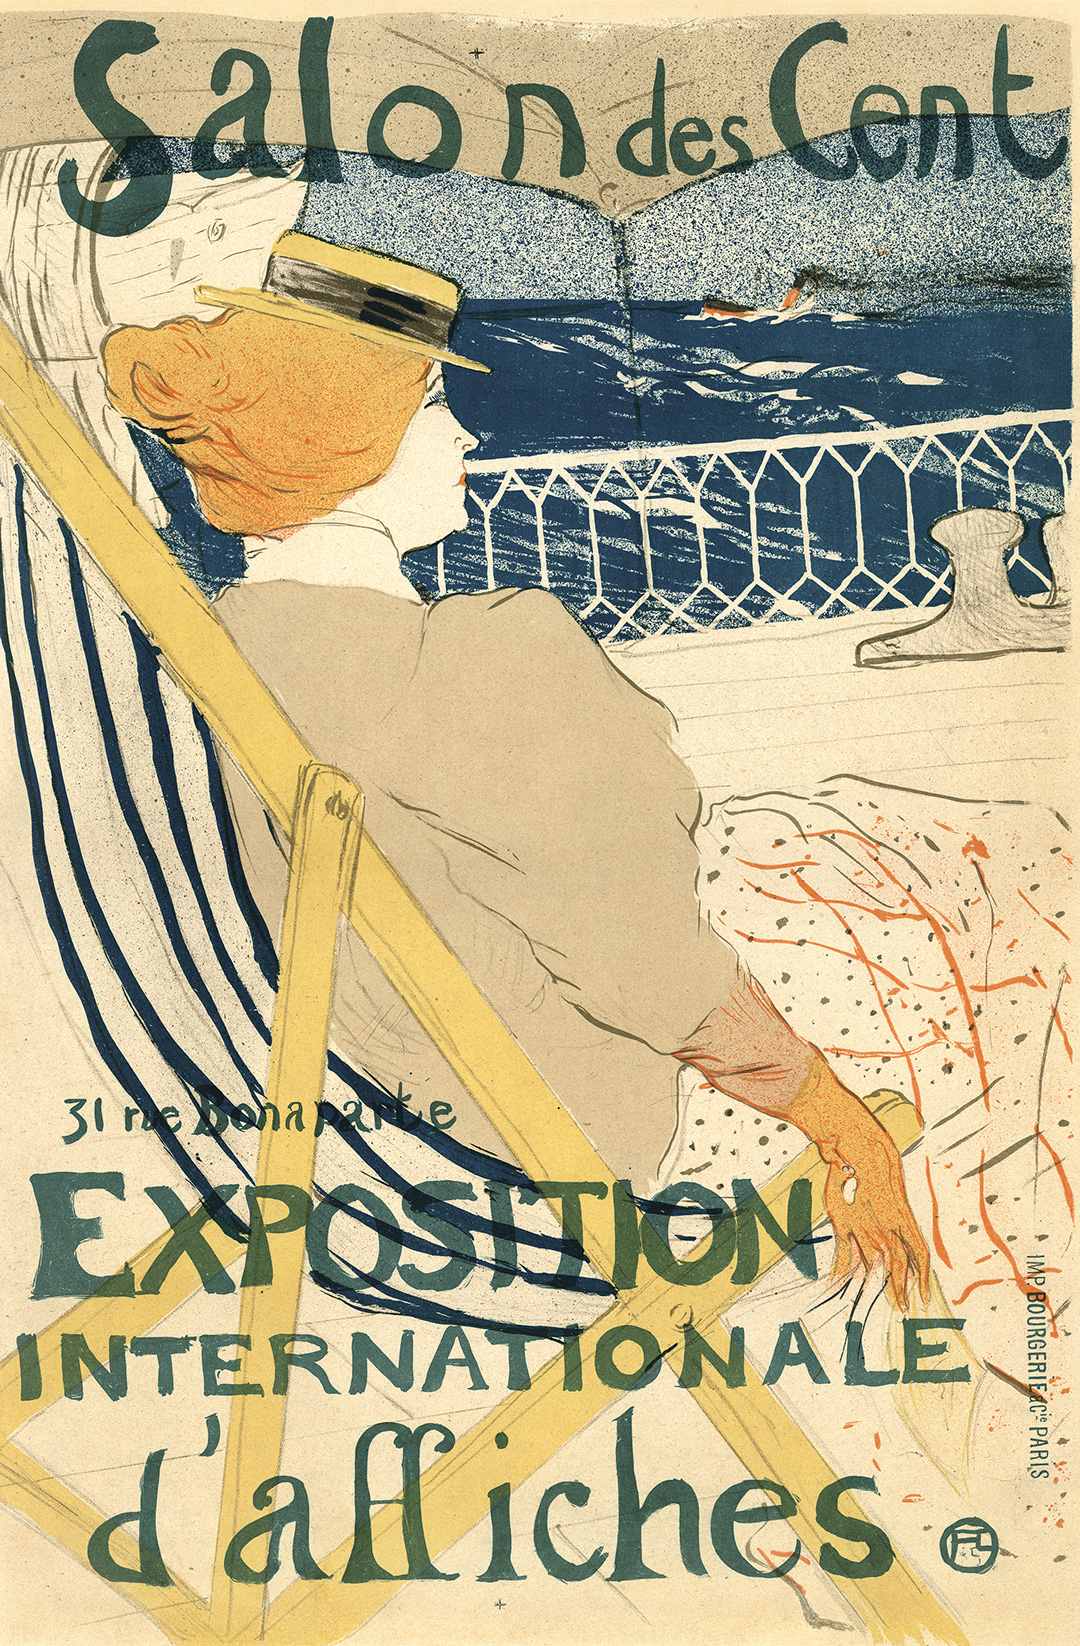 Fin de la Fée Verte. 1910.  Poster Auctions International, Inc.